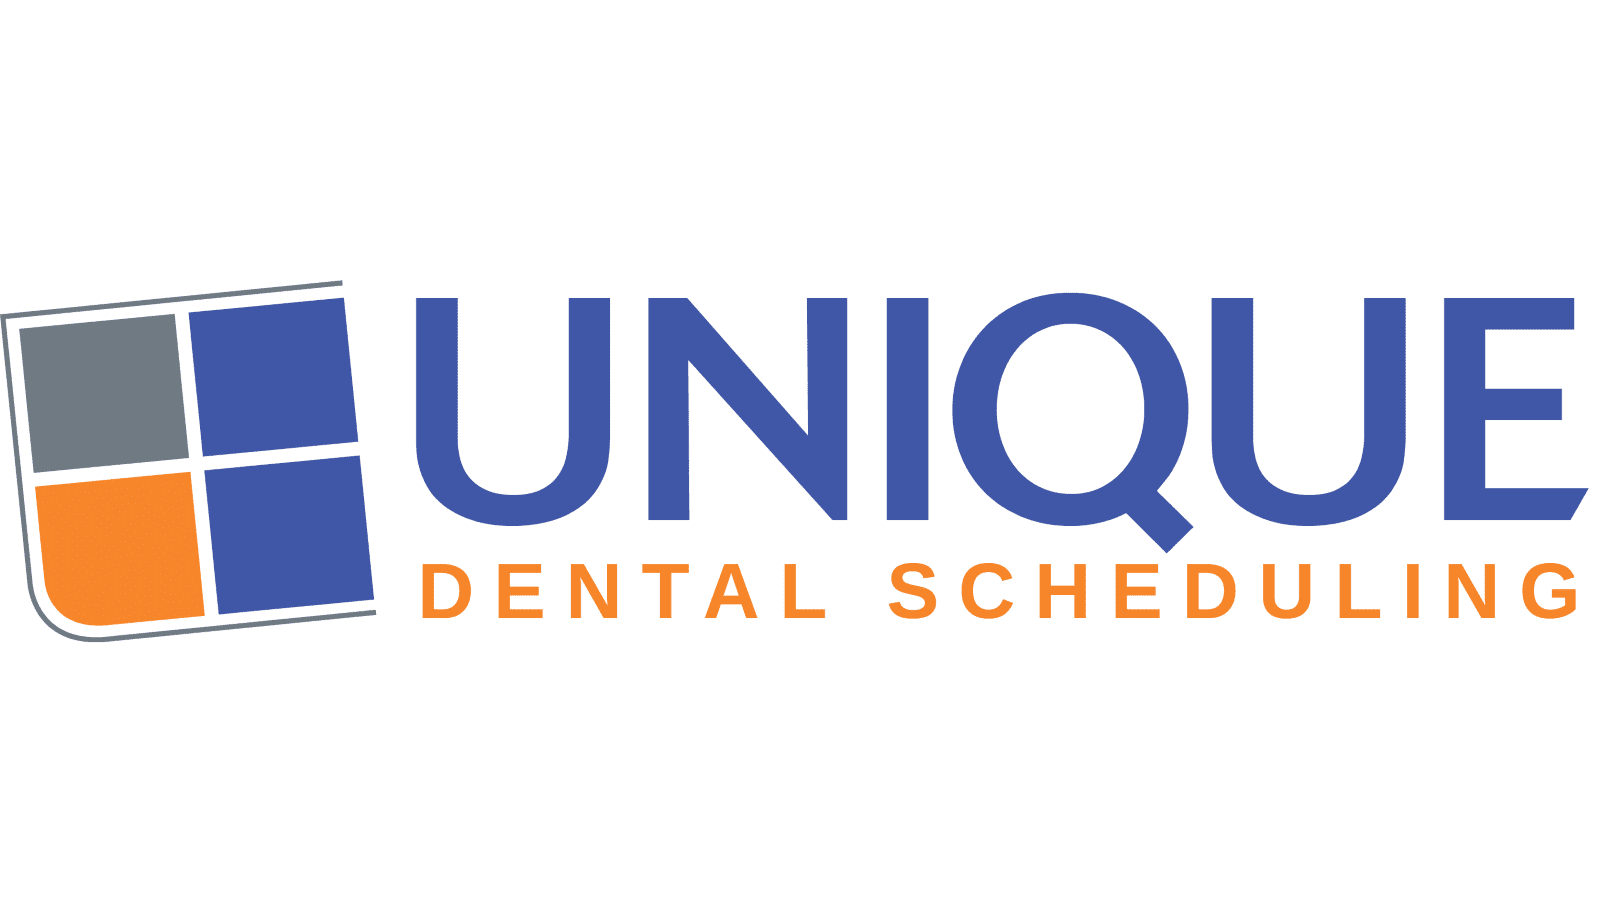 Unique dental scheduling logo